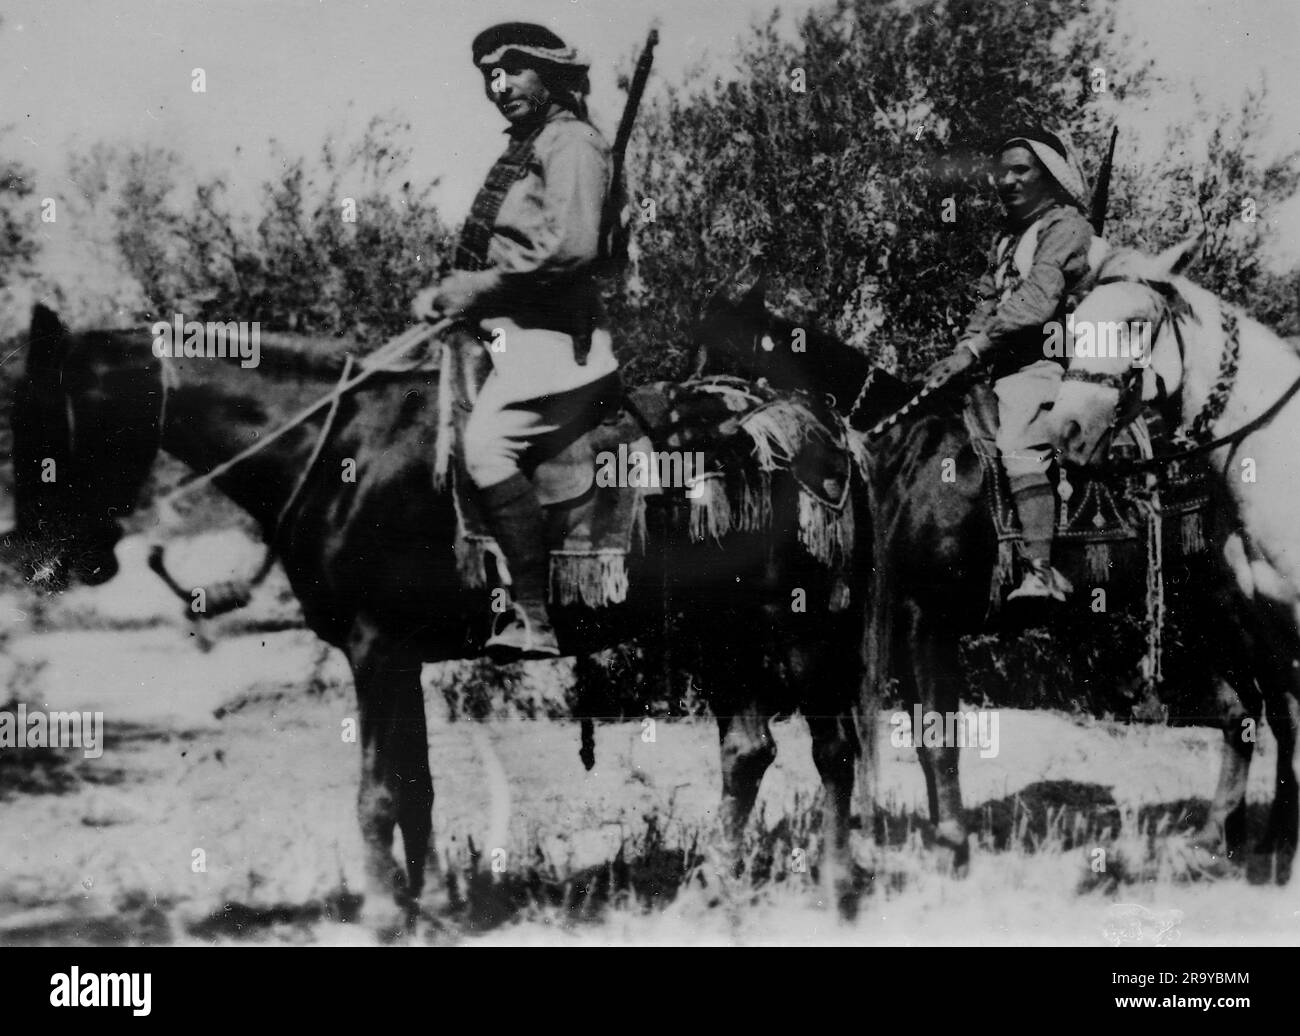 Ein Araber auf dem Pferderücken, Teil einer Gruppe, die als „Briganden“ bezeichnet wird (Mitglied einer Bande, die Menschen in Wäldern und Bergen überfallen und überfallen). Dieses Foto stammt aus einem Fotoalbum mit hauptsächlich Schnappschüssen, c1937, während der Besetzung Palästinas durch die britische Armee. Zwischen 1920 und 1948 verwaltete Großbritannien Palästina im Namen des Völkerbundes, ein Zeitraum, der als "britisches Mandat" bezeichnet wird. Stockfoto